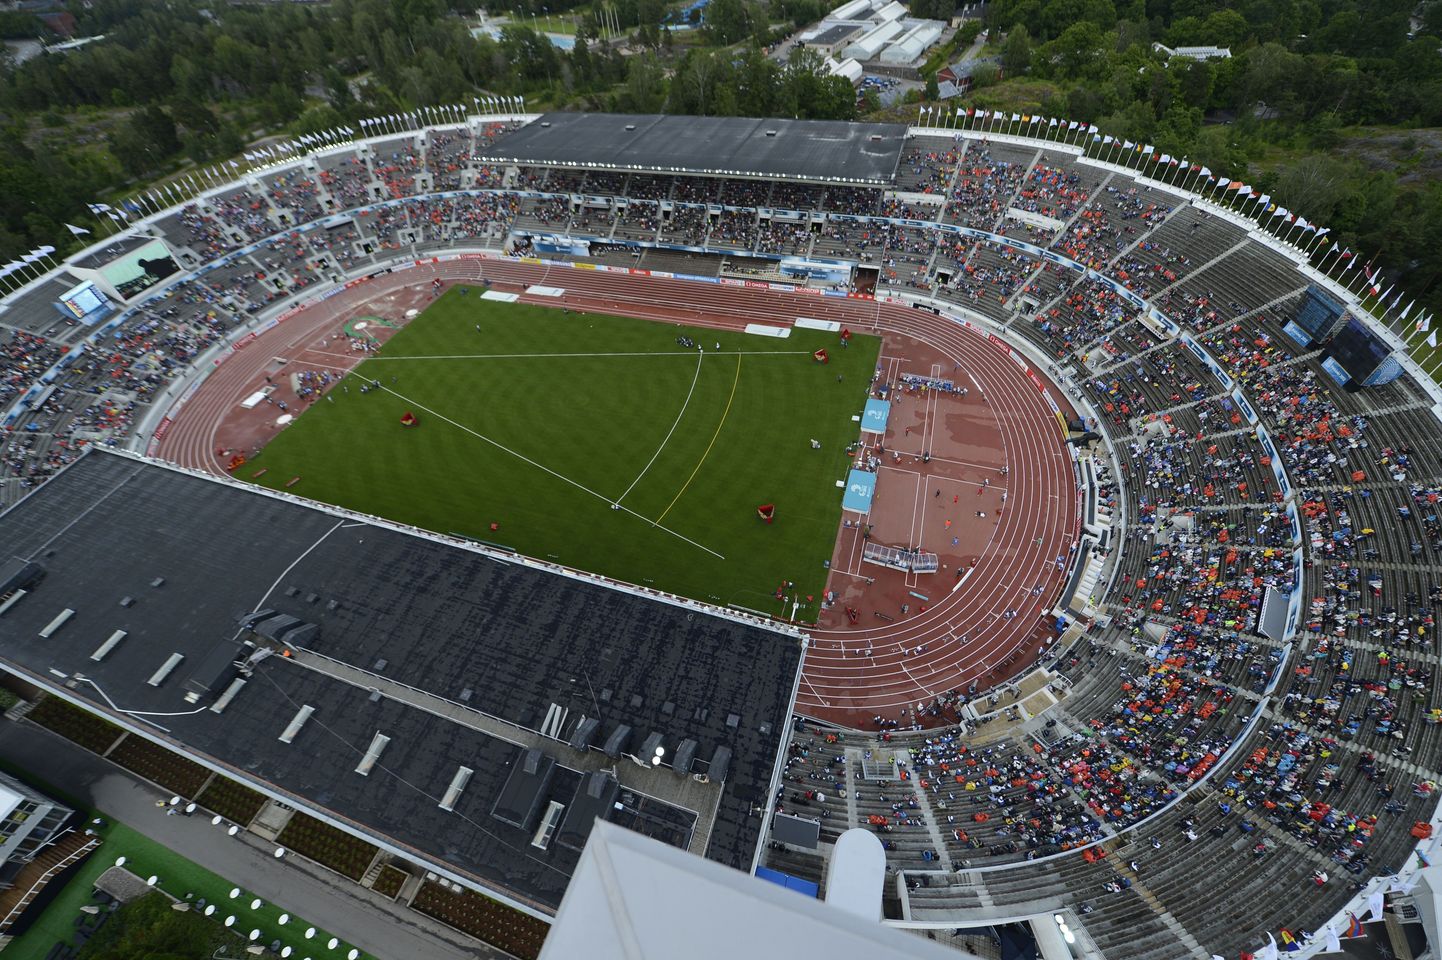 Helsingi olümpiastaadion.